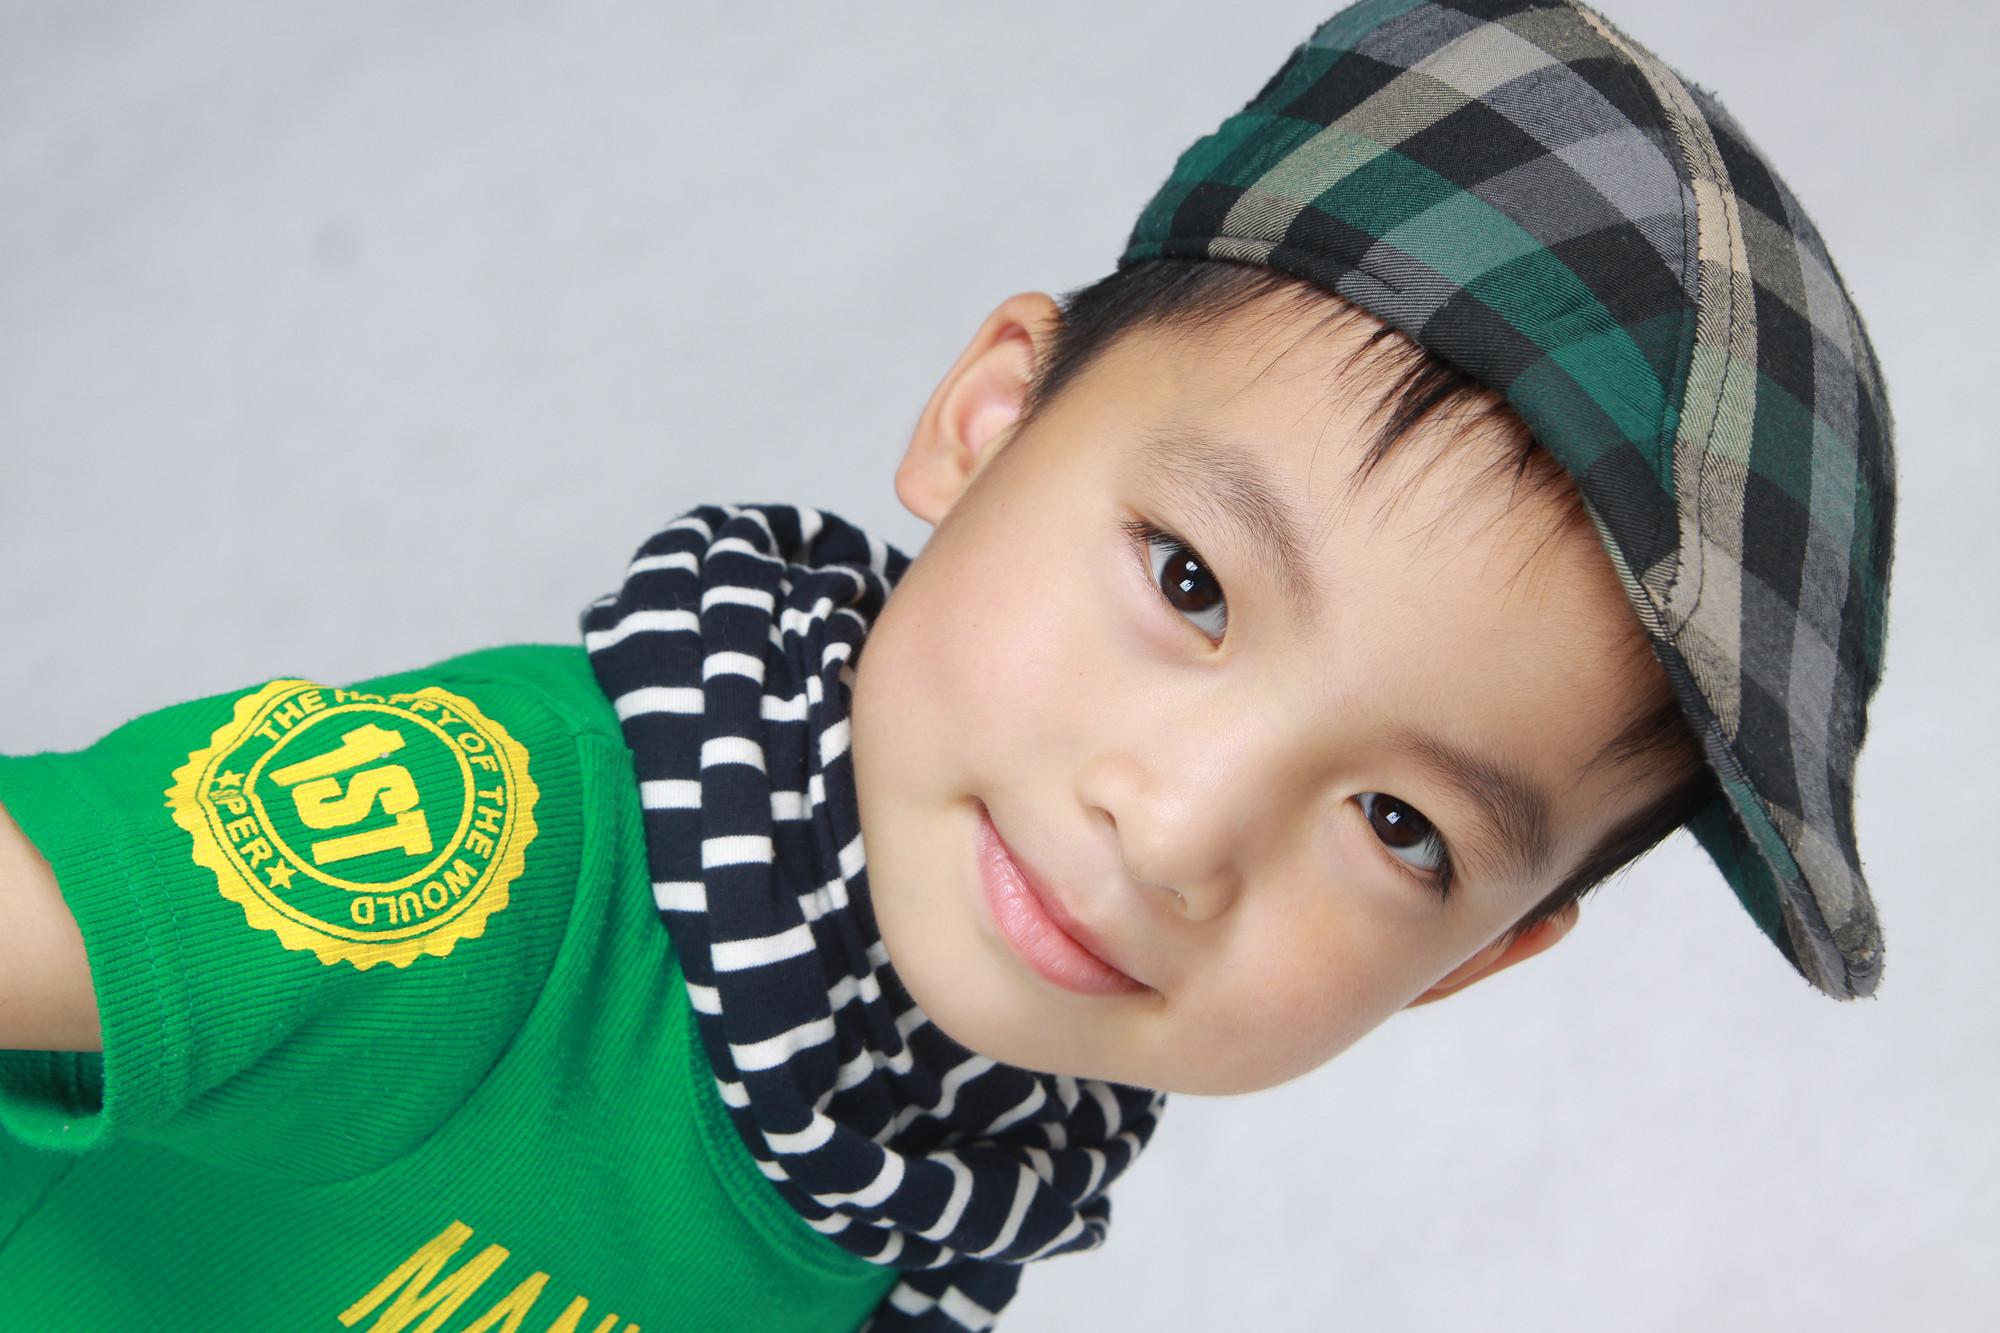 中国最帅小孩第一名图片